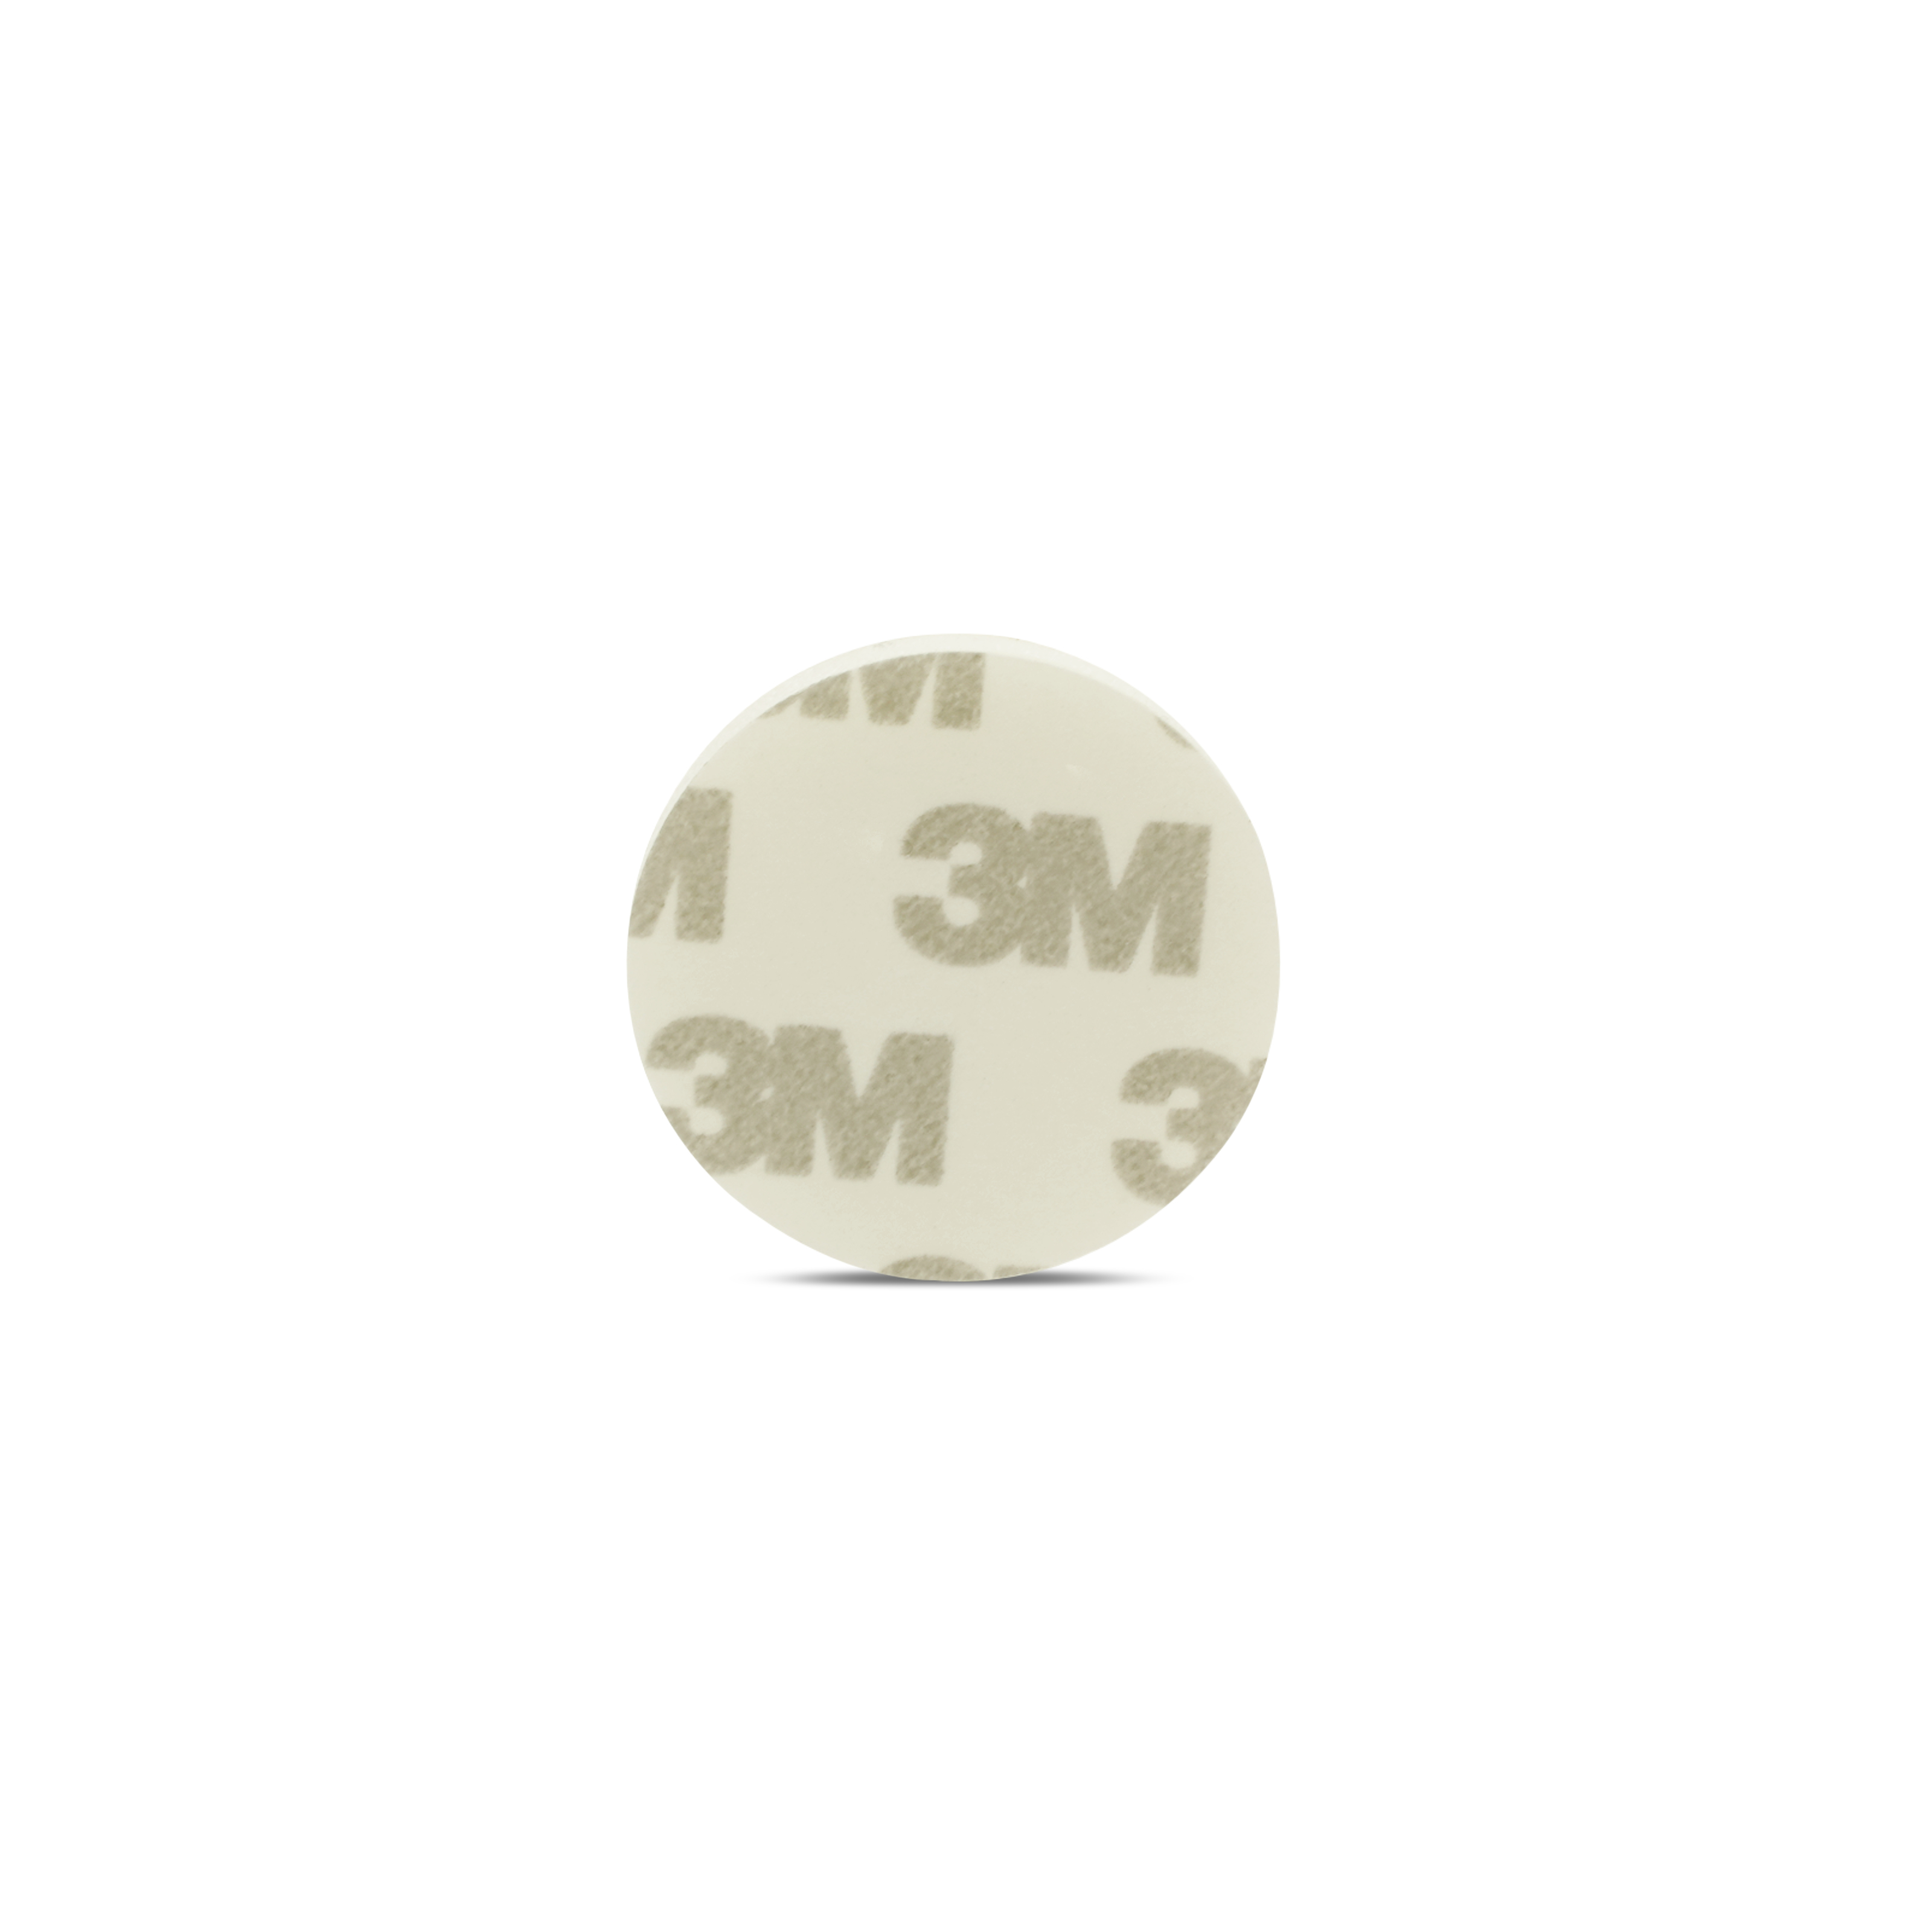 NFC Sticker PET - 30 mm - NTAG213 - 180 Byte - weiß - mit Schaumstoff